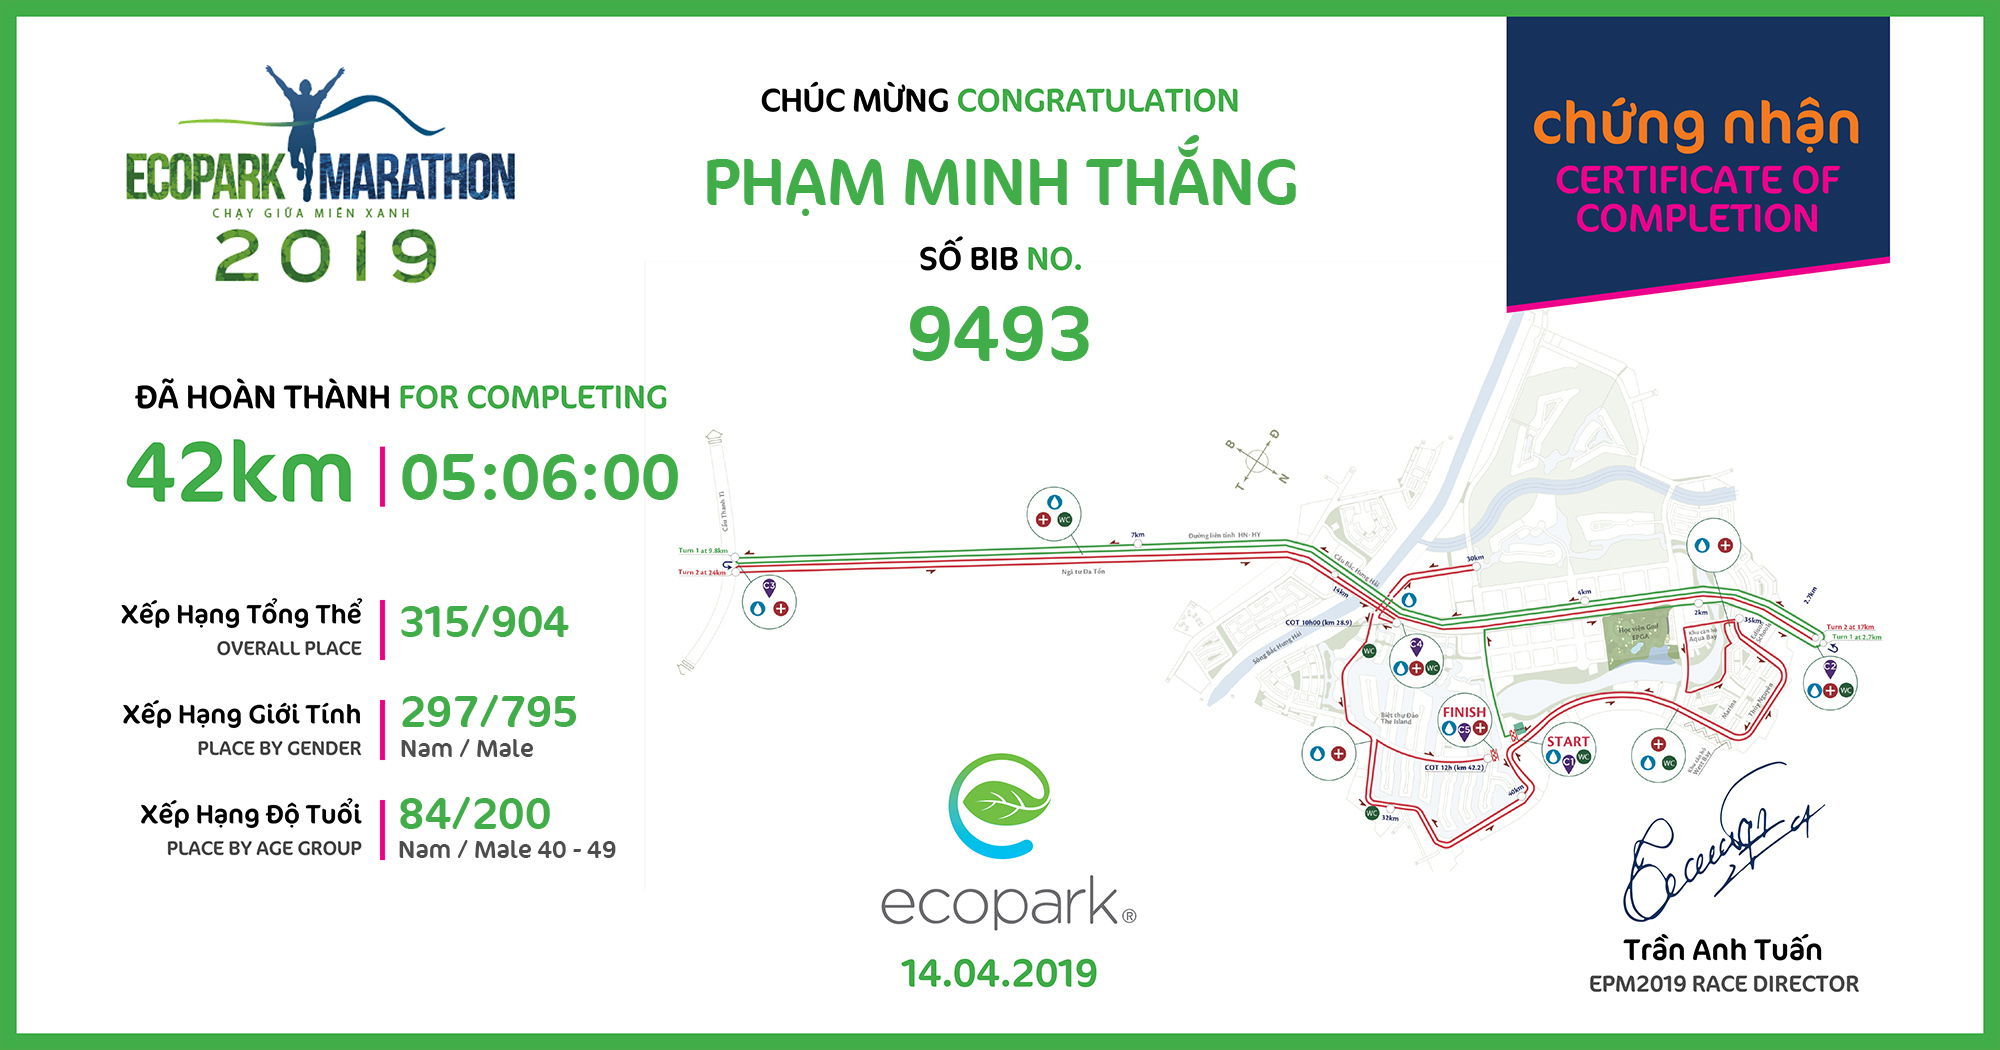 9493 - Phạm Minh Thắng